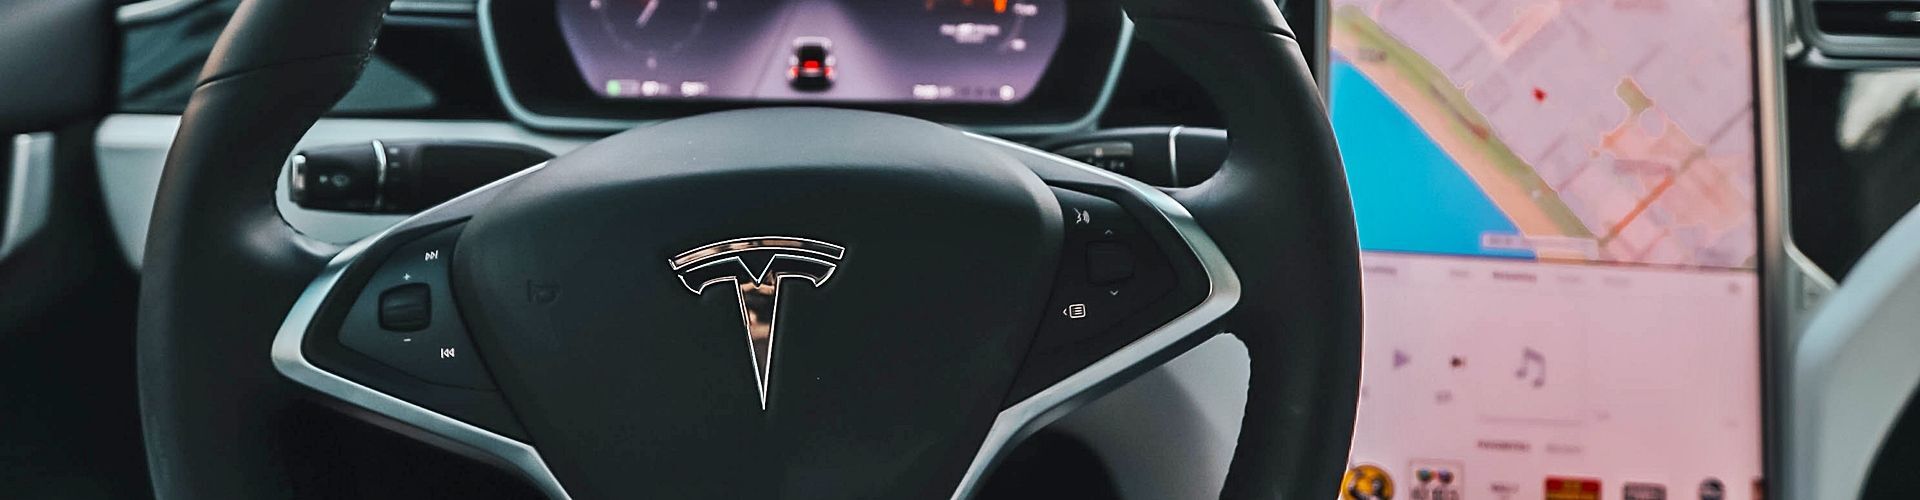 Los coches de Tesla podrán conducir solos por tan solo 3.000